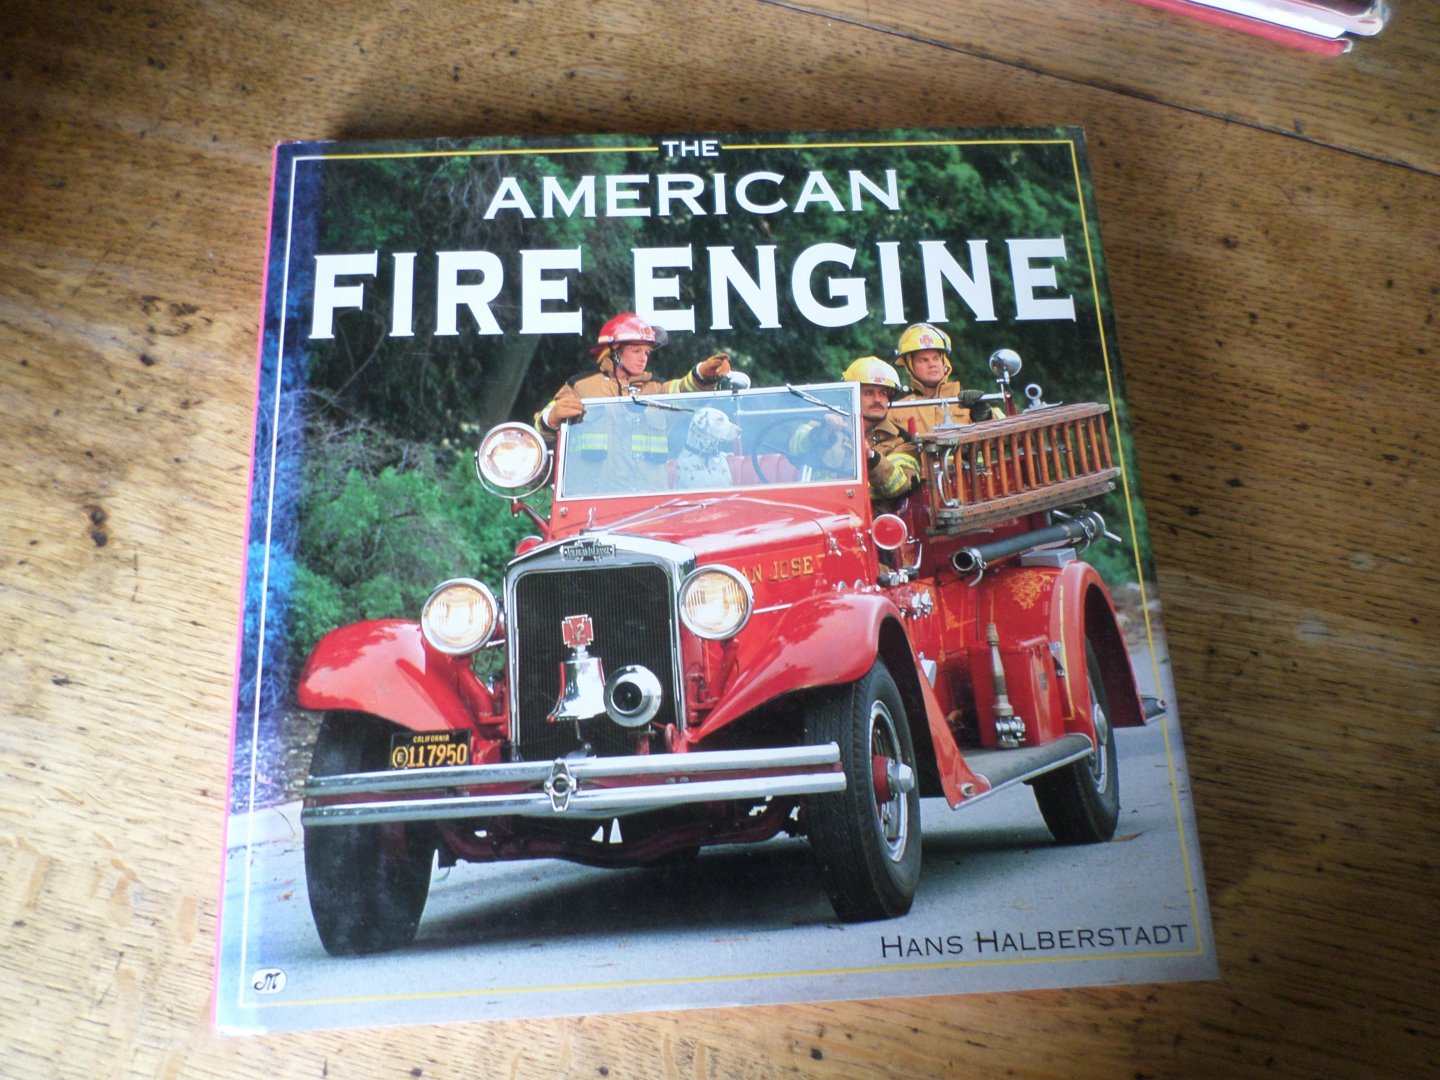 Halberstadt, Hans - The American fire engine